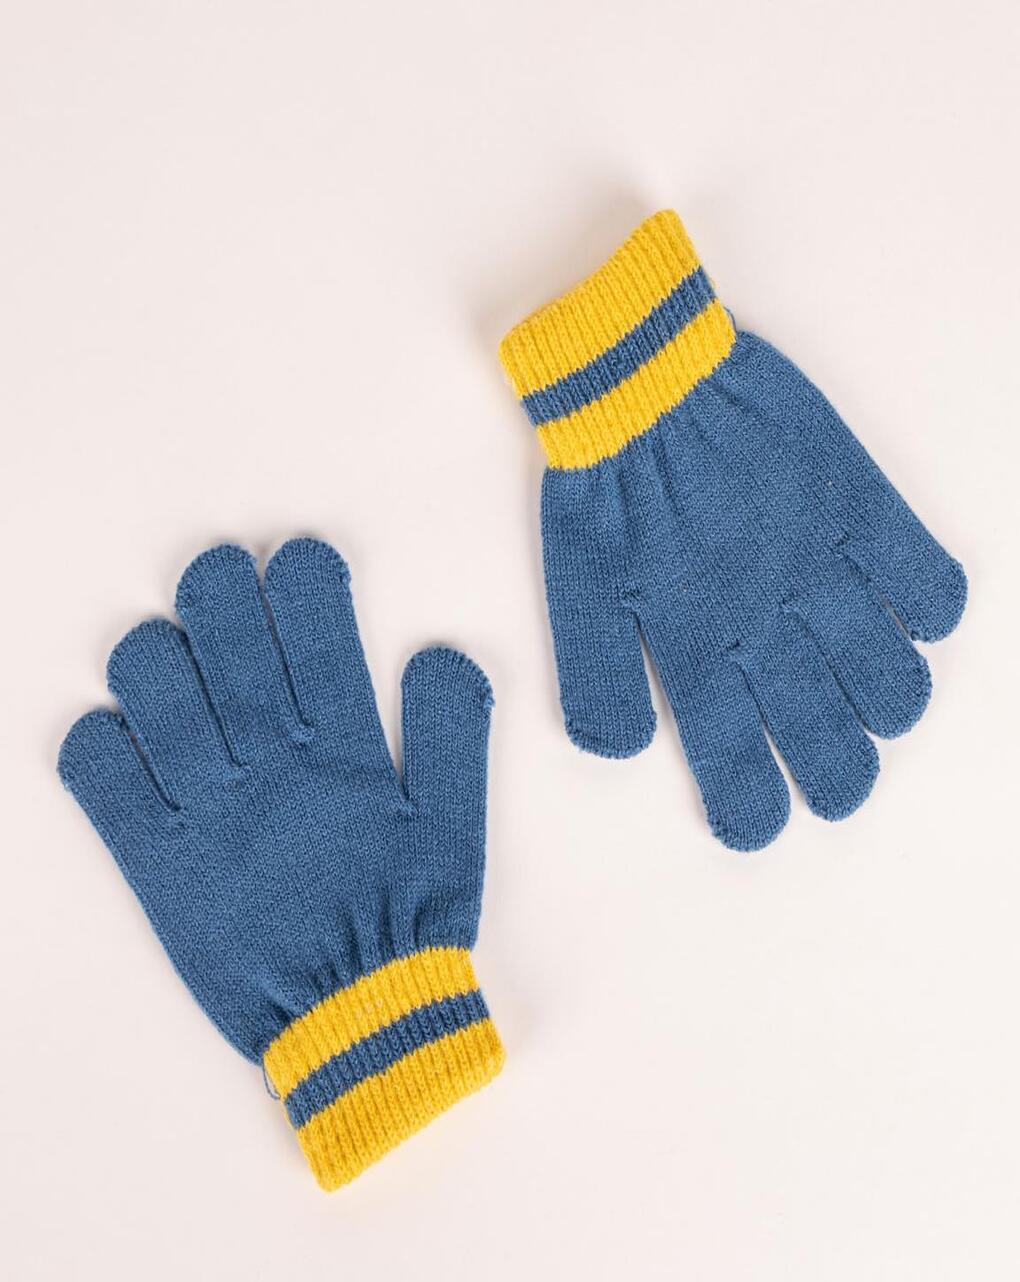 παιδικό χειμερινό σετ σκουφάκι, κασκόλ και γάντια bluey για αγόρι 2200010066 - Disney